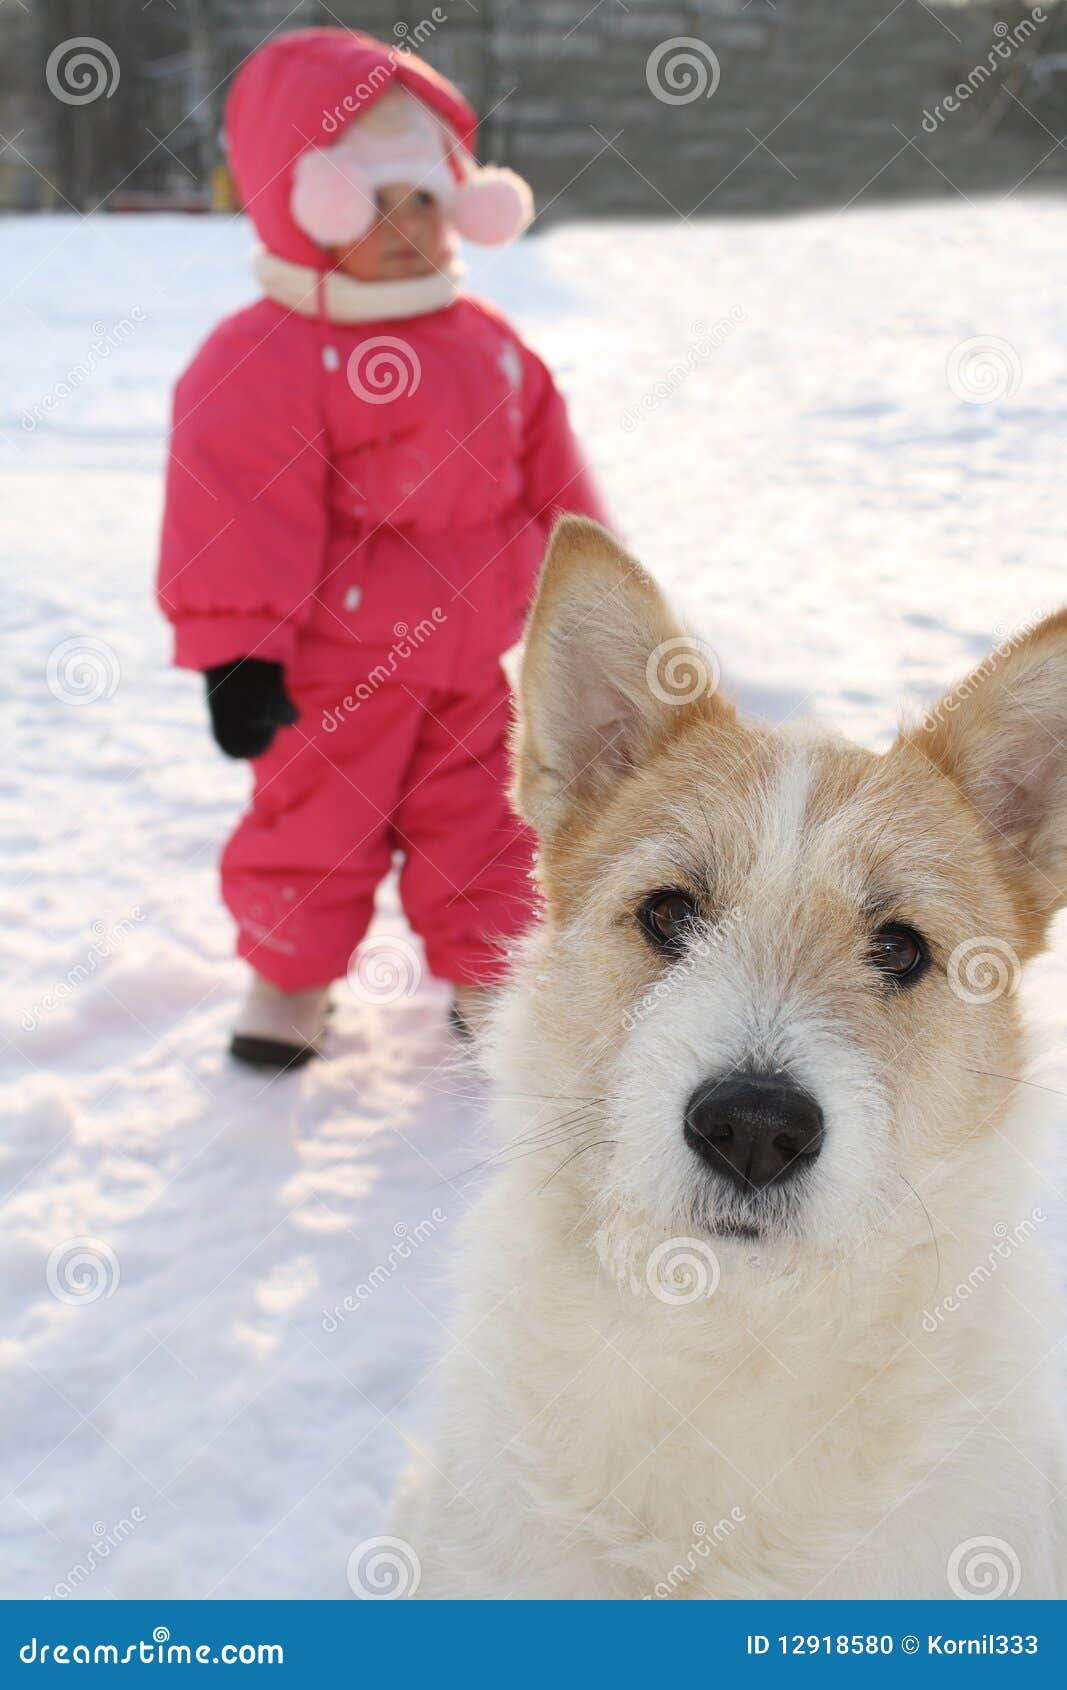 Gezicht van een hond. Portret van een mooie hond en het kleine kind in een rood jasje op een achterachtergrond.